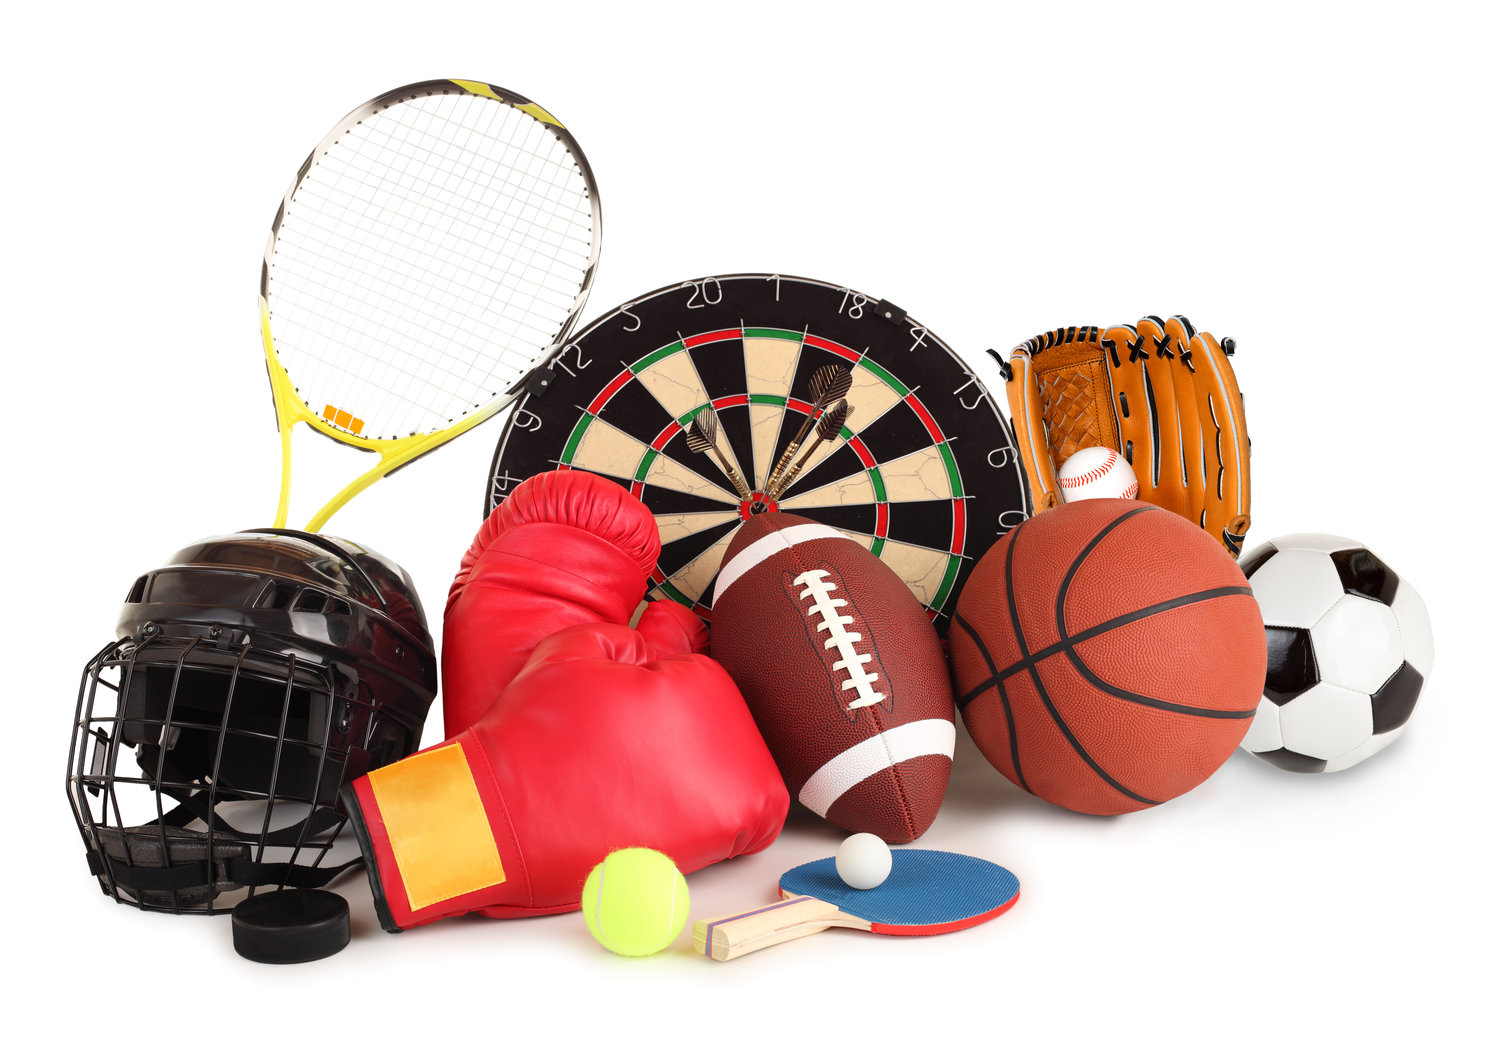 Sport items. Спортивные принадлежности. Спортивные атрибуты. Спортивный инвентарь для спорта. Спортинвентарь для детей.